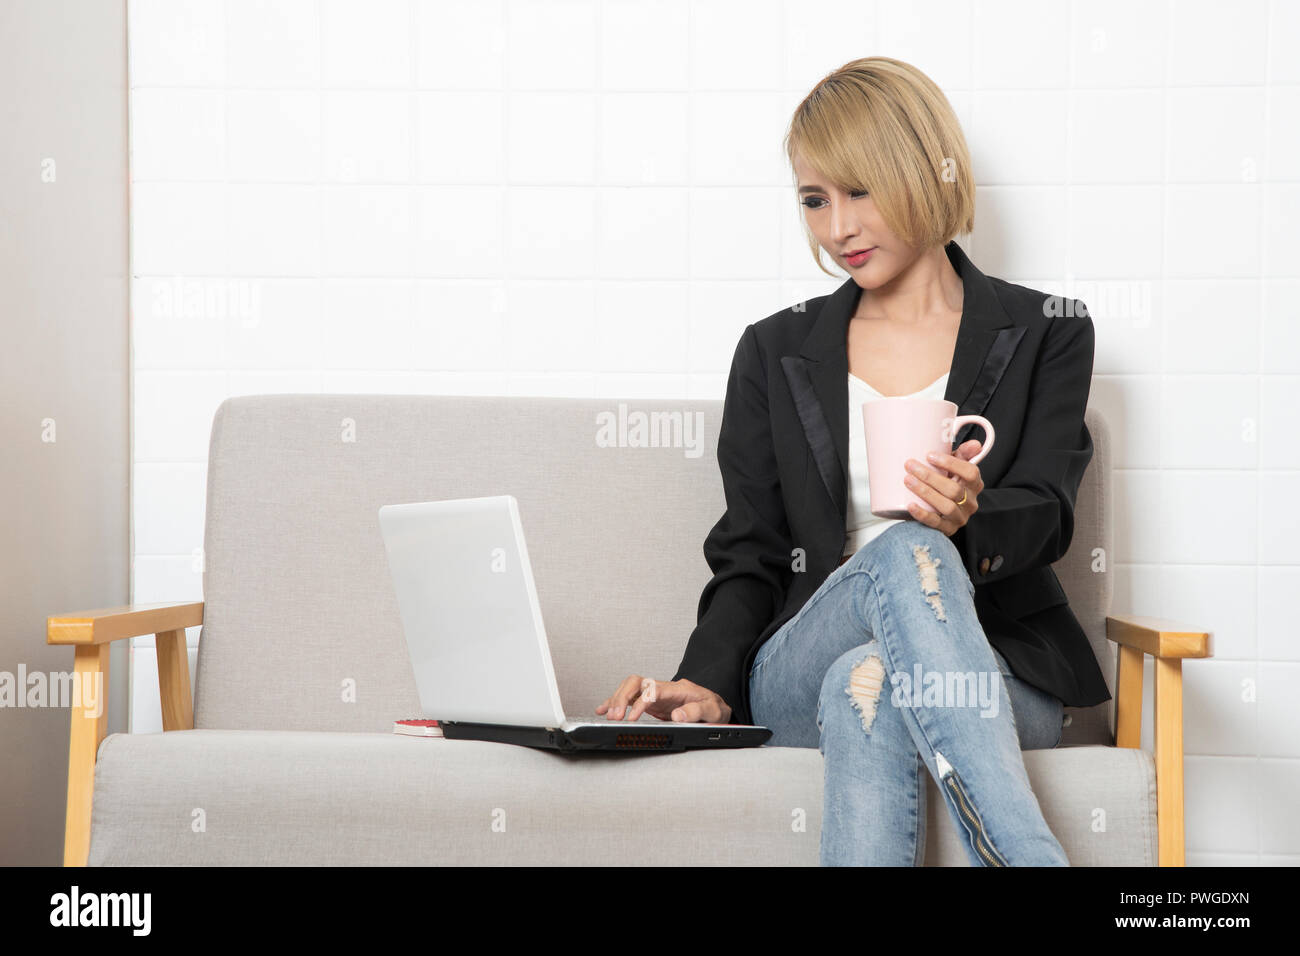 Business donna seduta sul divano e lavorando dal tablet computer tenendo tazza di caffè in mano. Foto Stock